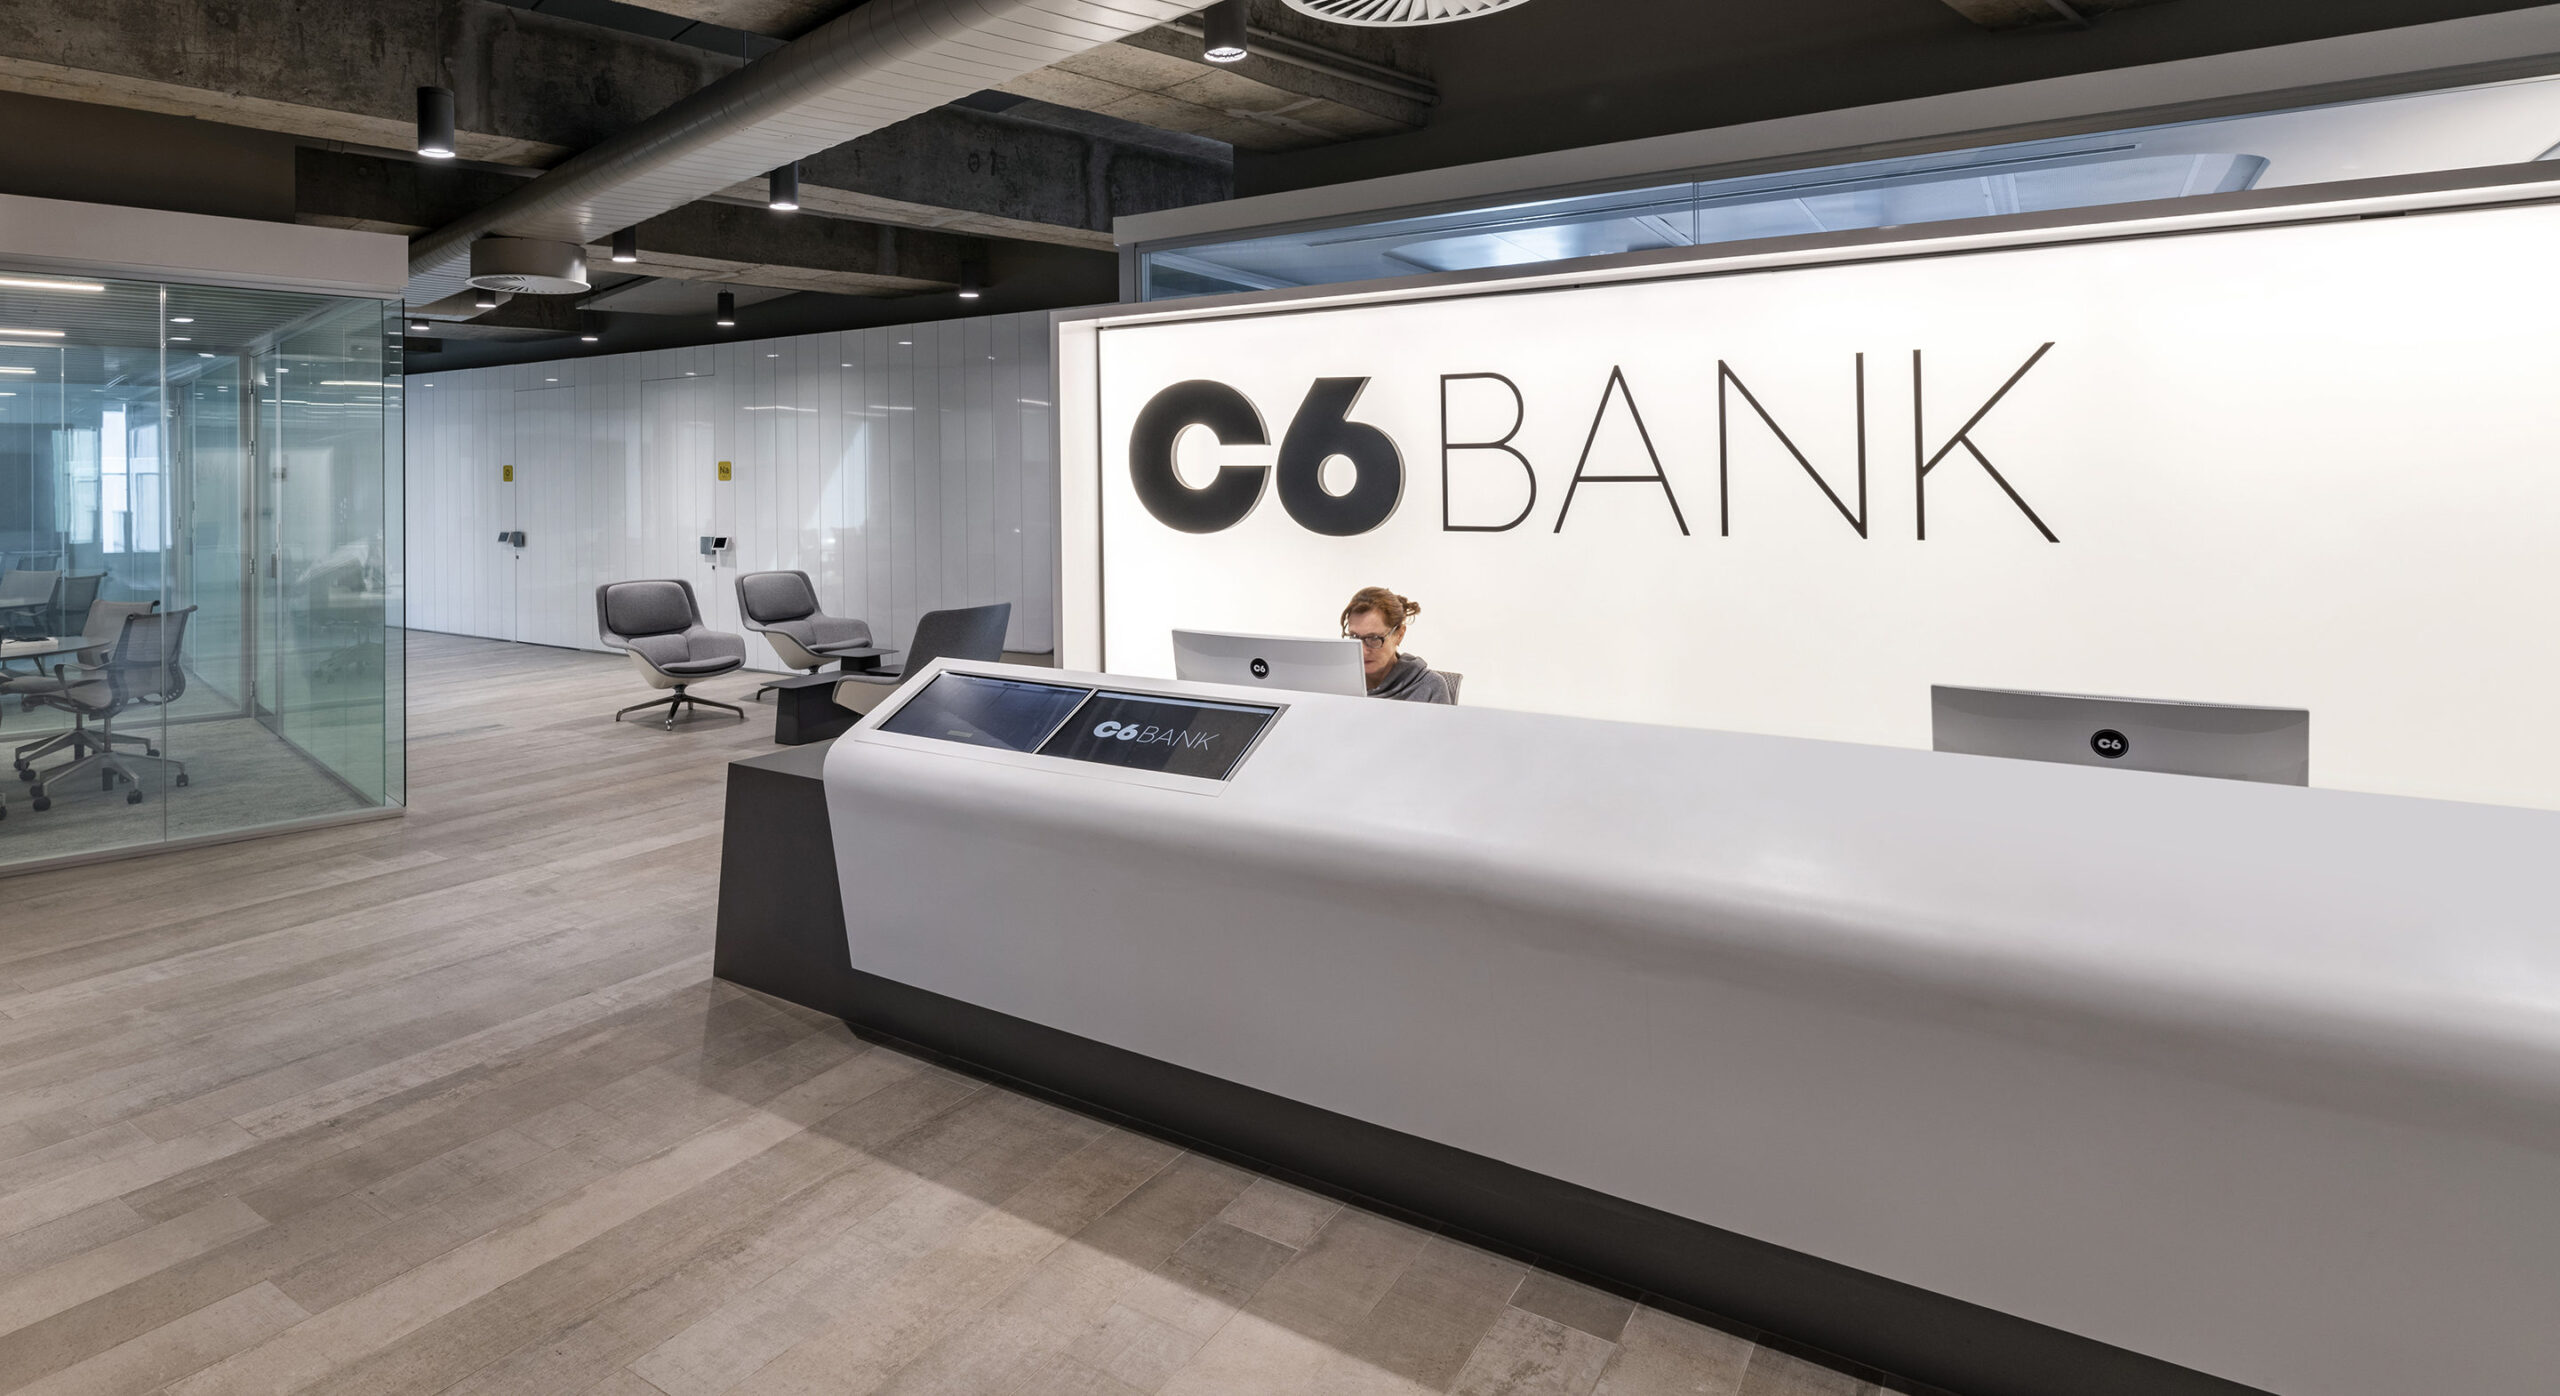 C6 Bank concede novo benefício em jogo da Ubisoft